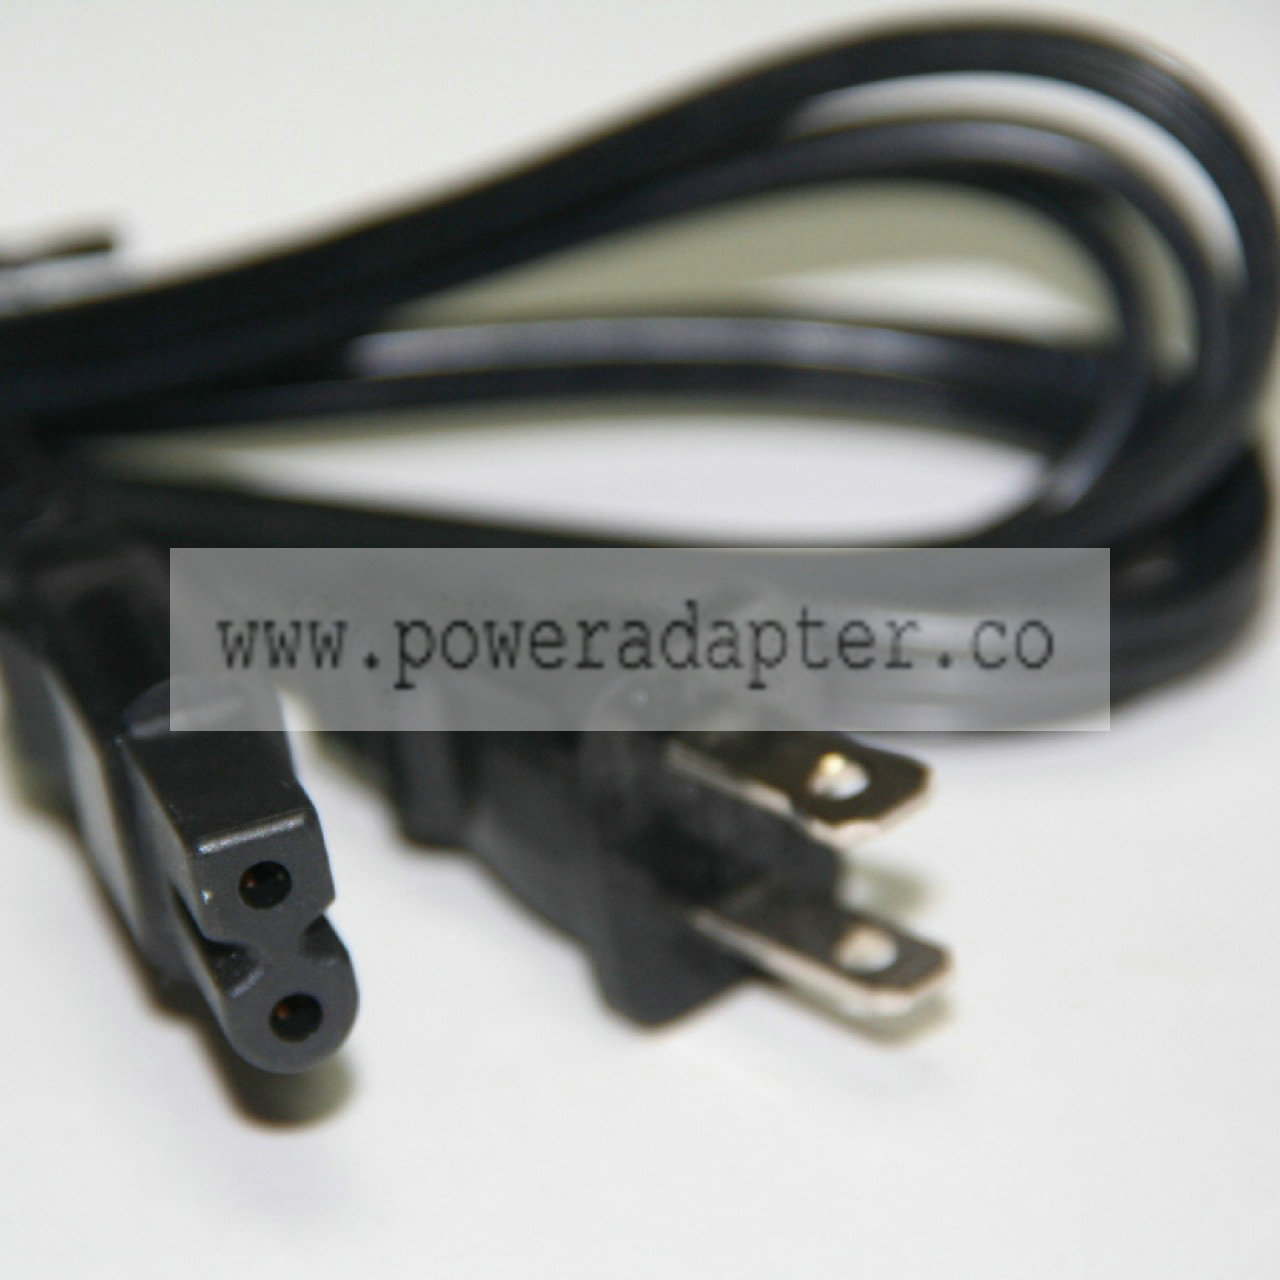 Replacement Power Cable: Stanton / Technics / Tascam / etc for cd / turntable / cassette / etc Product Description Pow